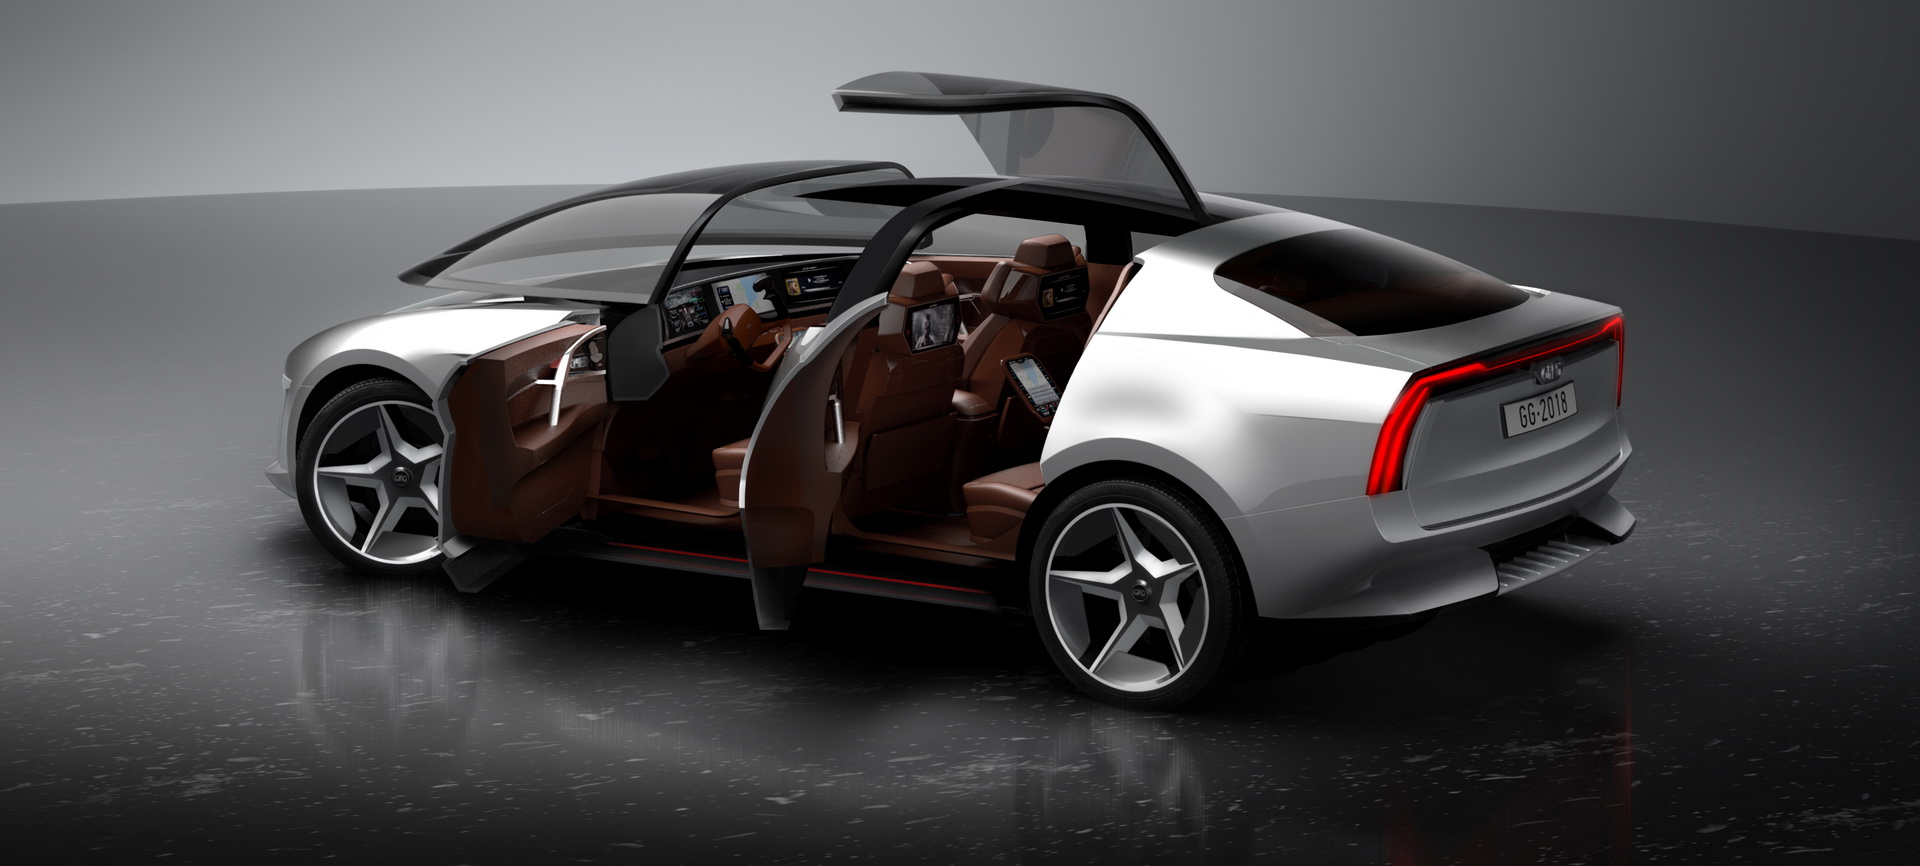 Geneva International Motor Show, gfg-style-sybilla-unveiled-geneva-7: GFG Sibylla EV Concept: Inovasi Terkini Pada Sebuah Mobil